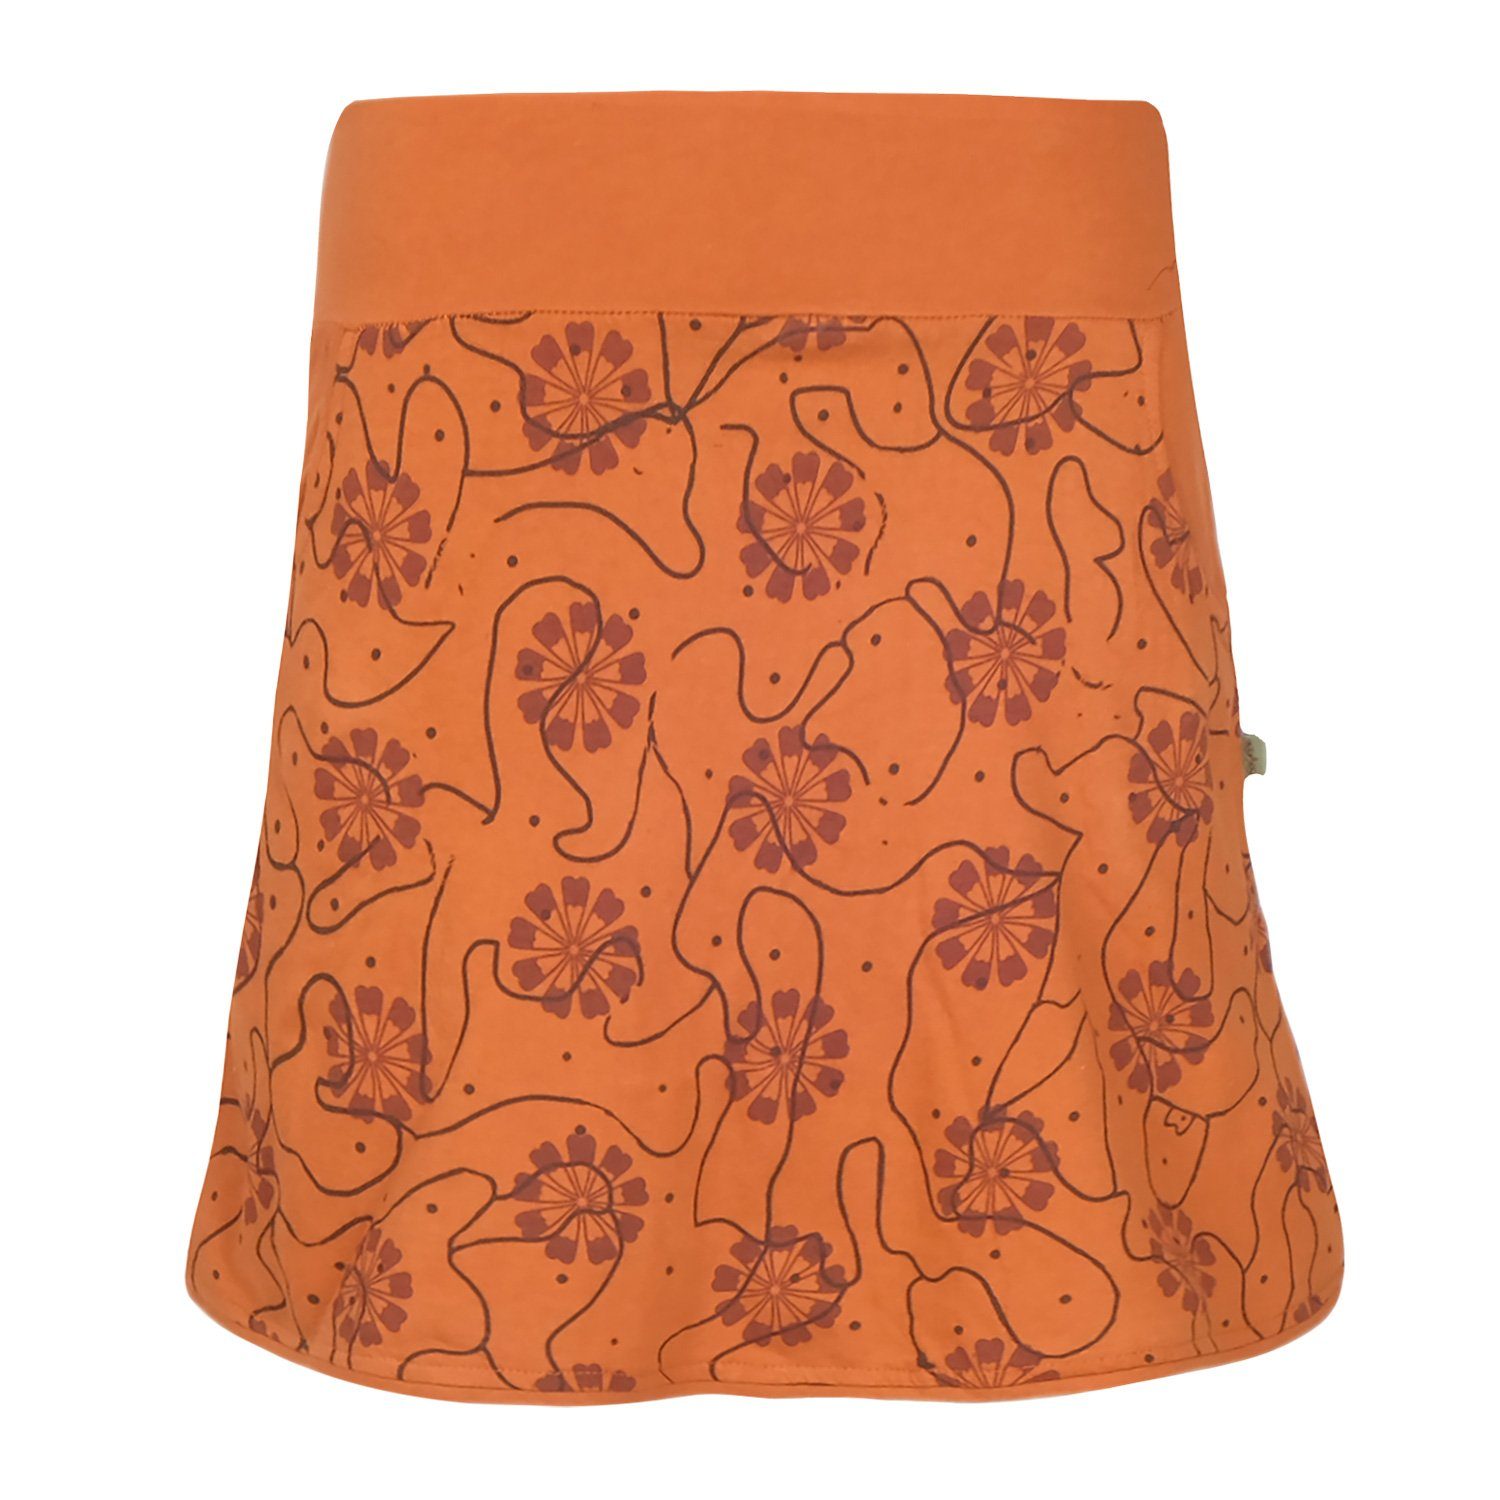 Vishes Jerseyrock Baumwoll-Rock 70er 80er Jahre Retro Blumen Muster bedruckt Taschen Ornamente, Goa, Hippie Style orange